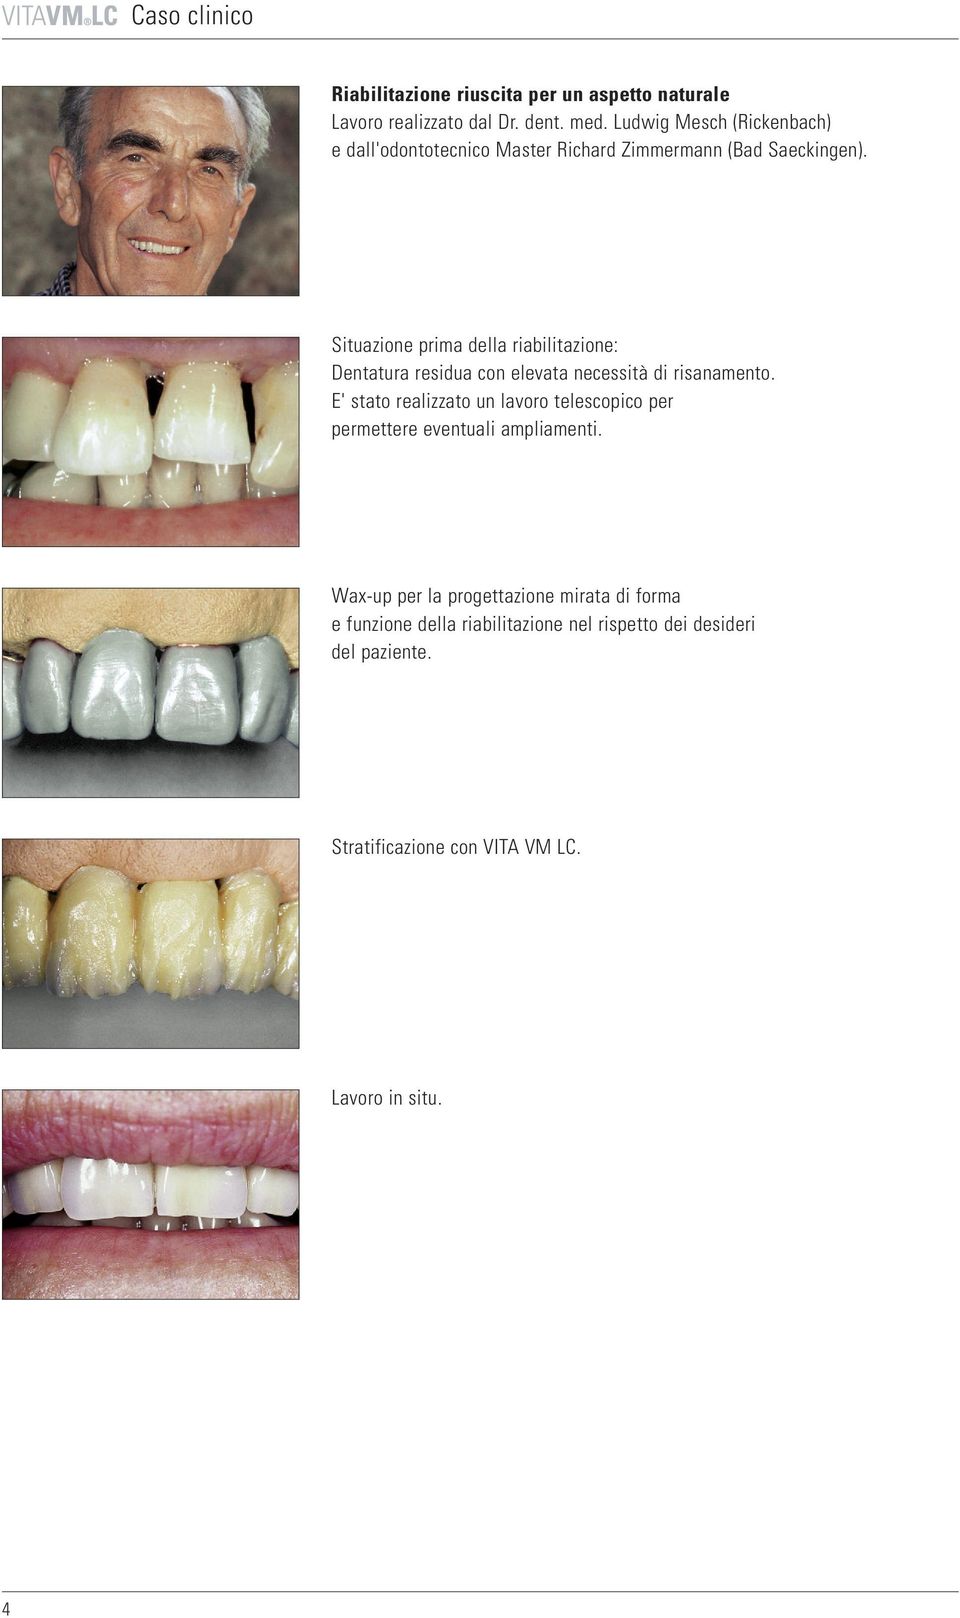 Situazione prima della riabilitazione: Dentatura residua con elevata necessità di risanamento.